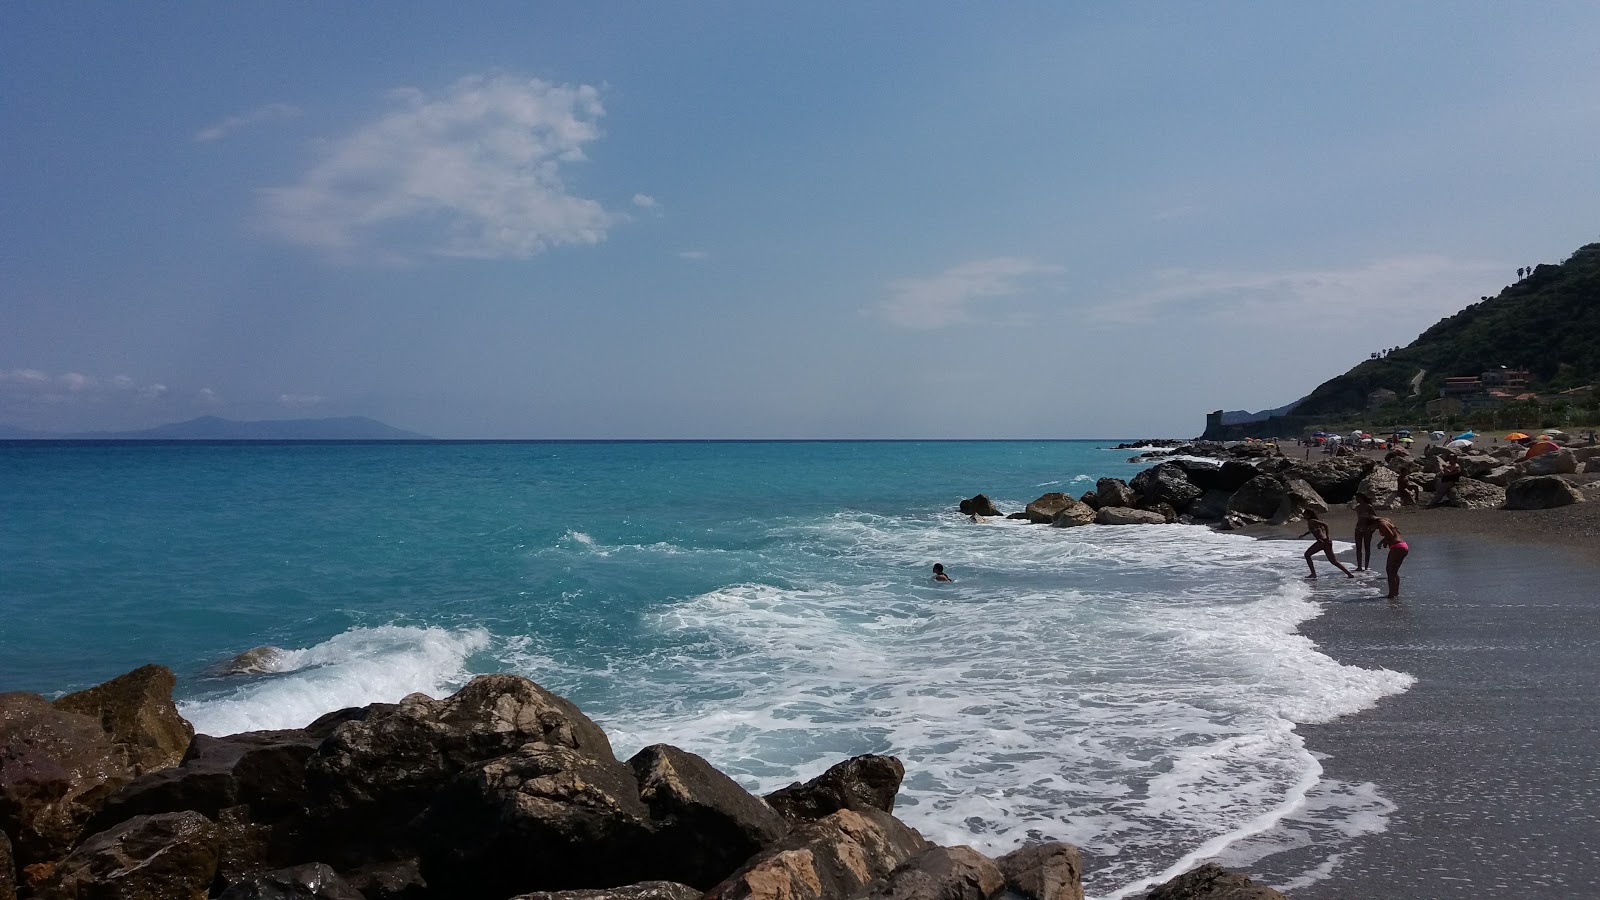 Zdjęcie Gliaca beach - popularne miejsce wśród znawców relaksu